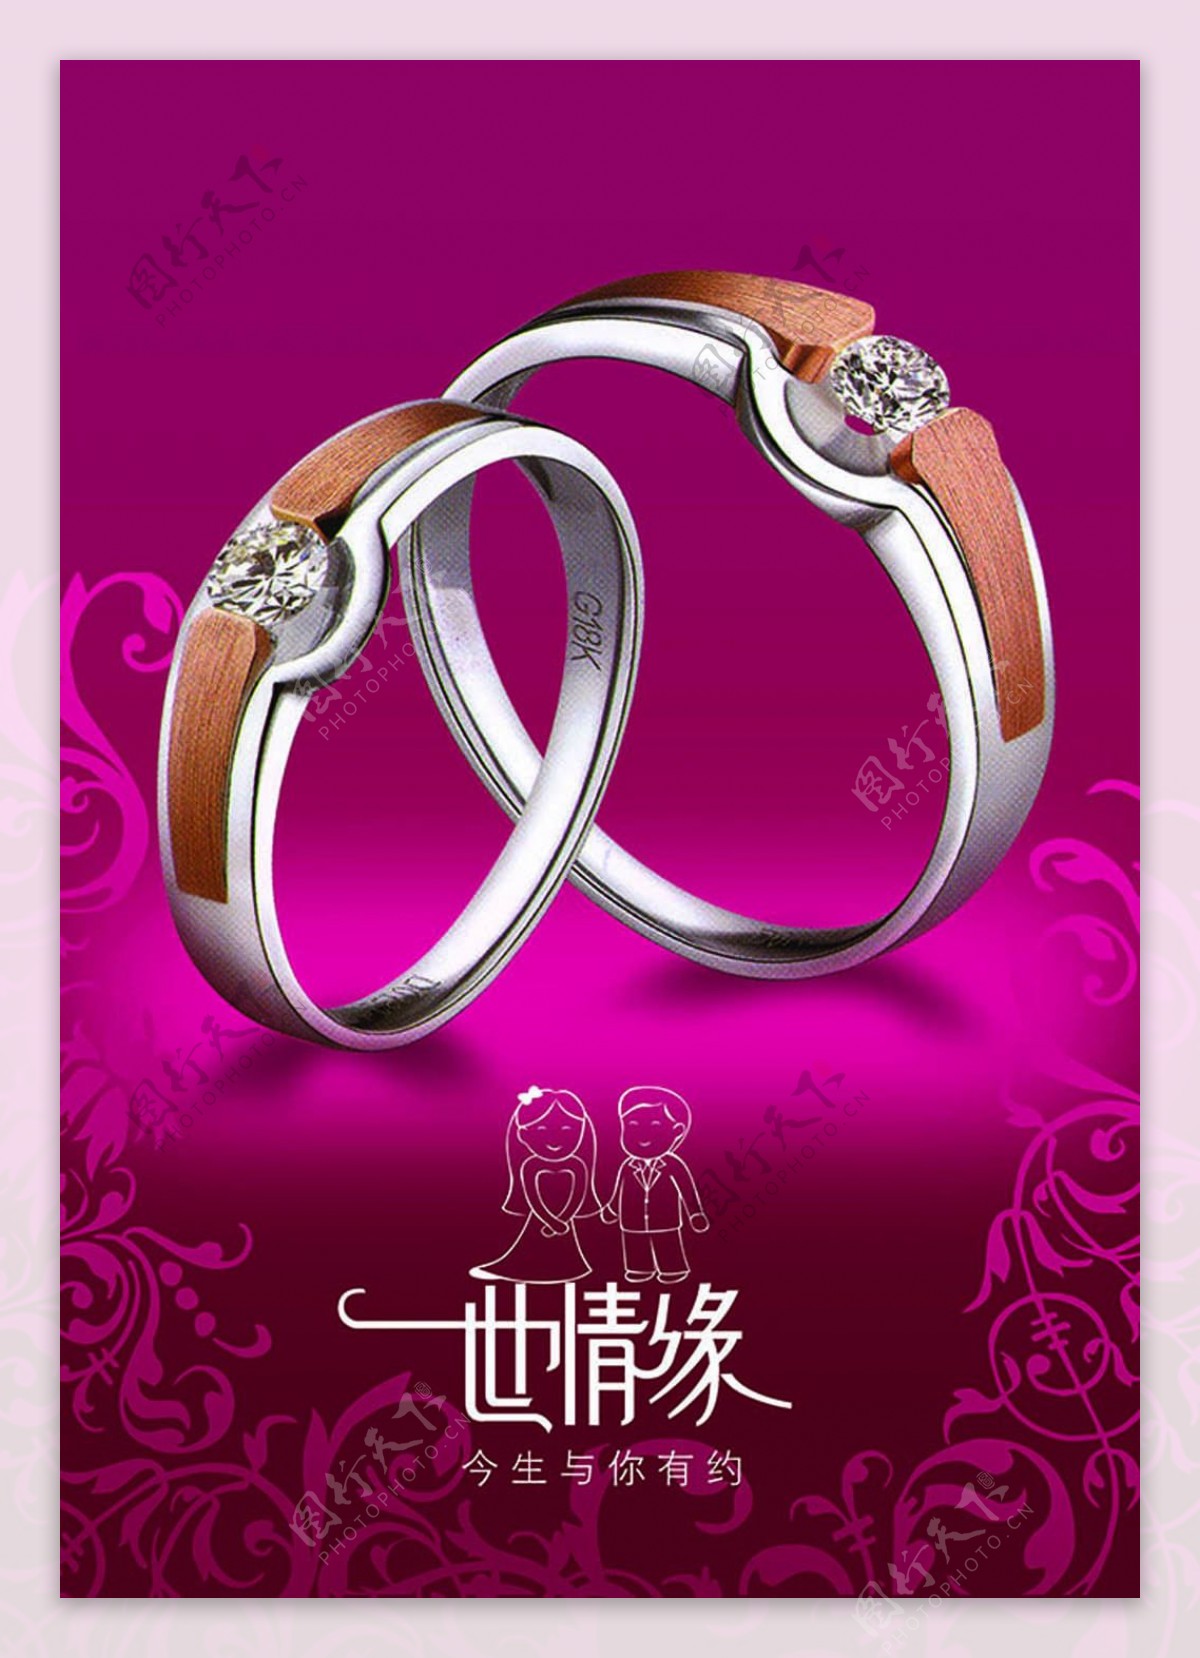 结婚钻石戒指海报设计psd素材下载